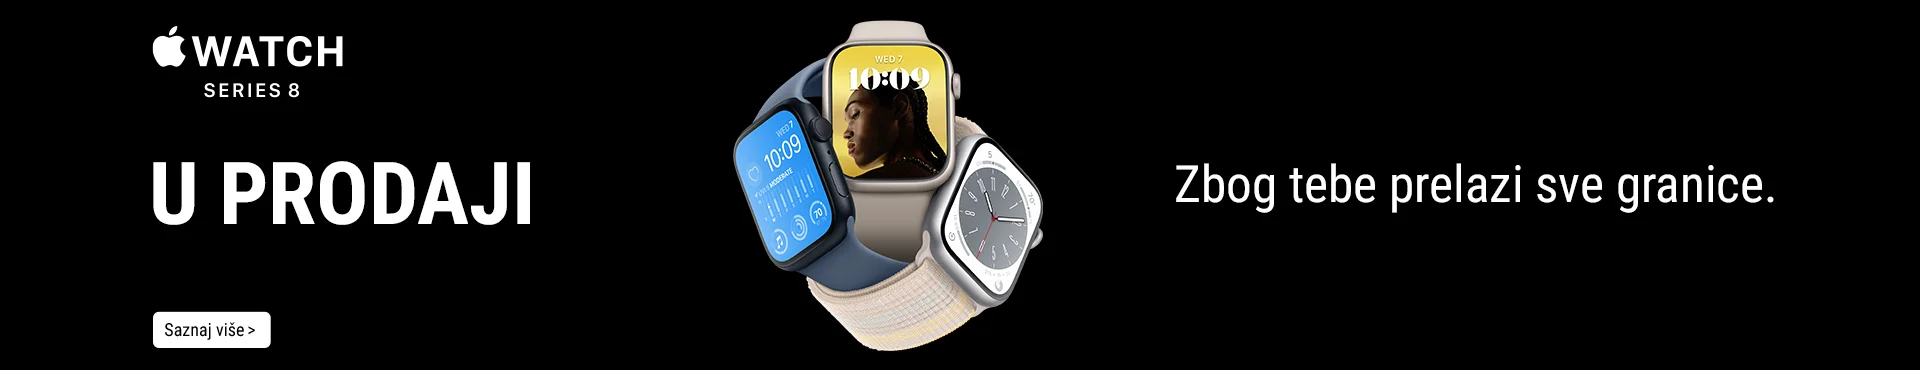 Apple Watch Series 8 u prodaji